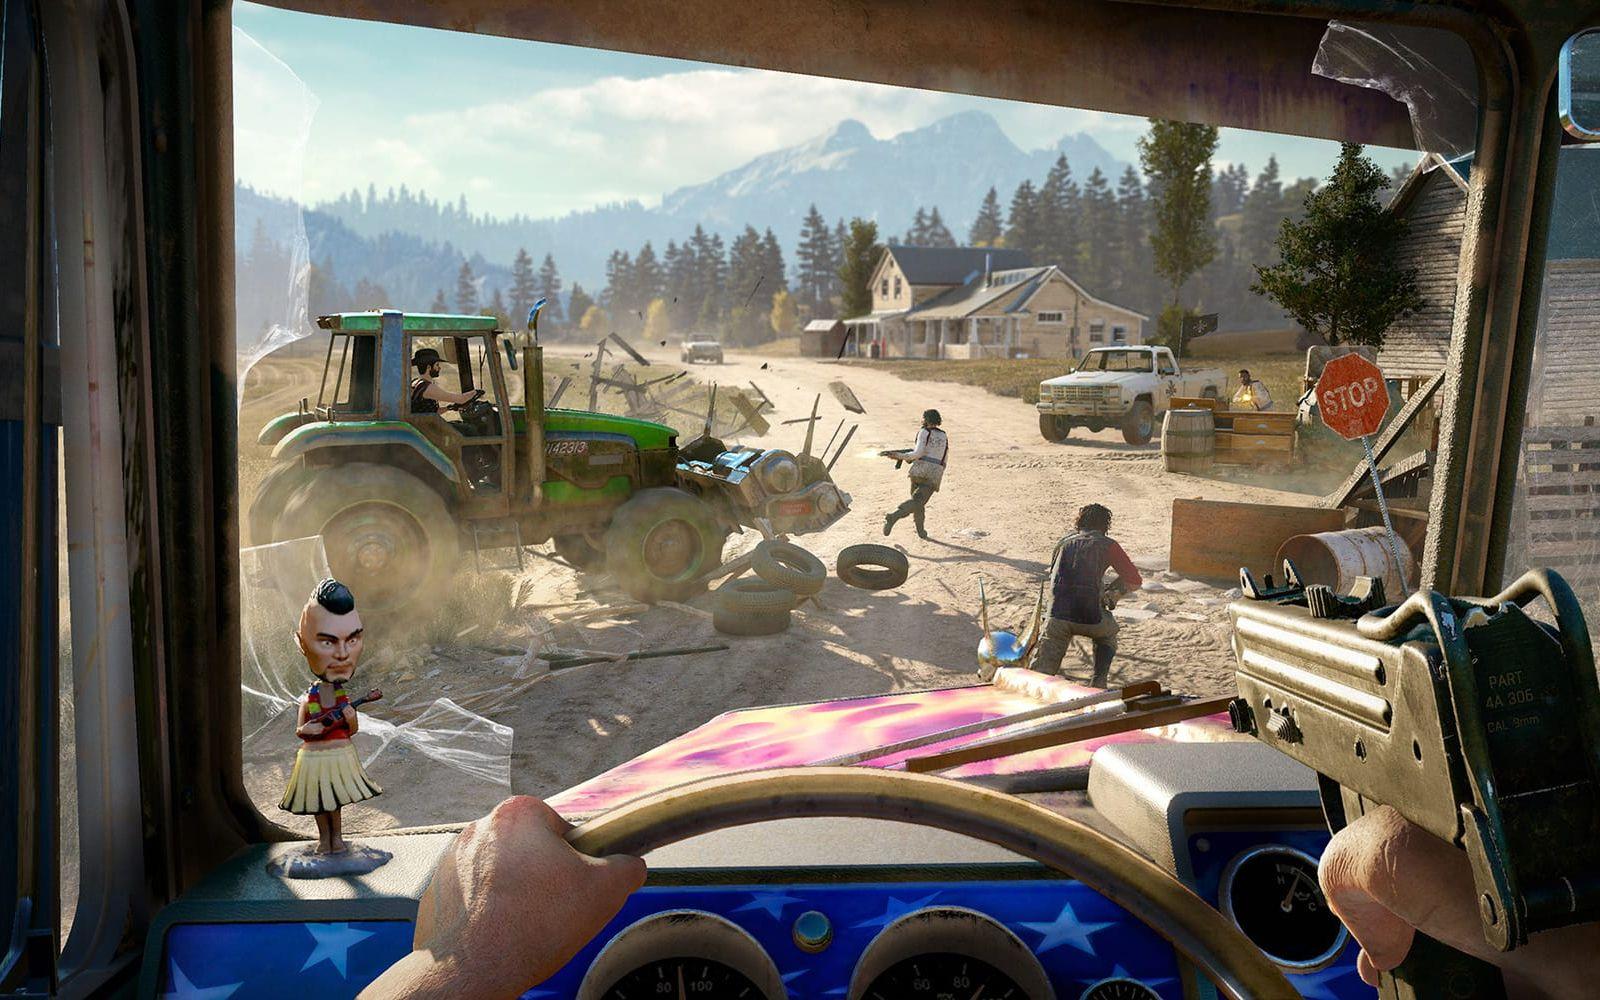 Femte delen av actionserien "Far Cry" utspelar sig på amerikanska landsbygden och släpps i februari nästa år. Bild: Ubisoft